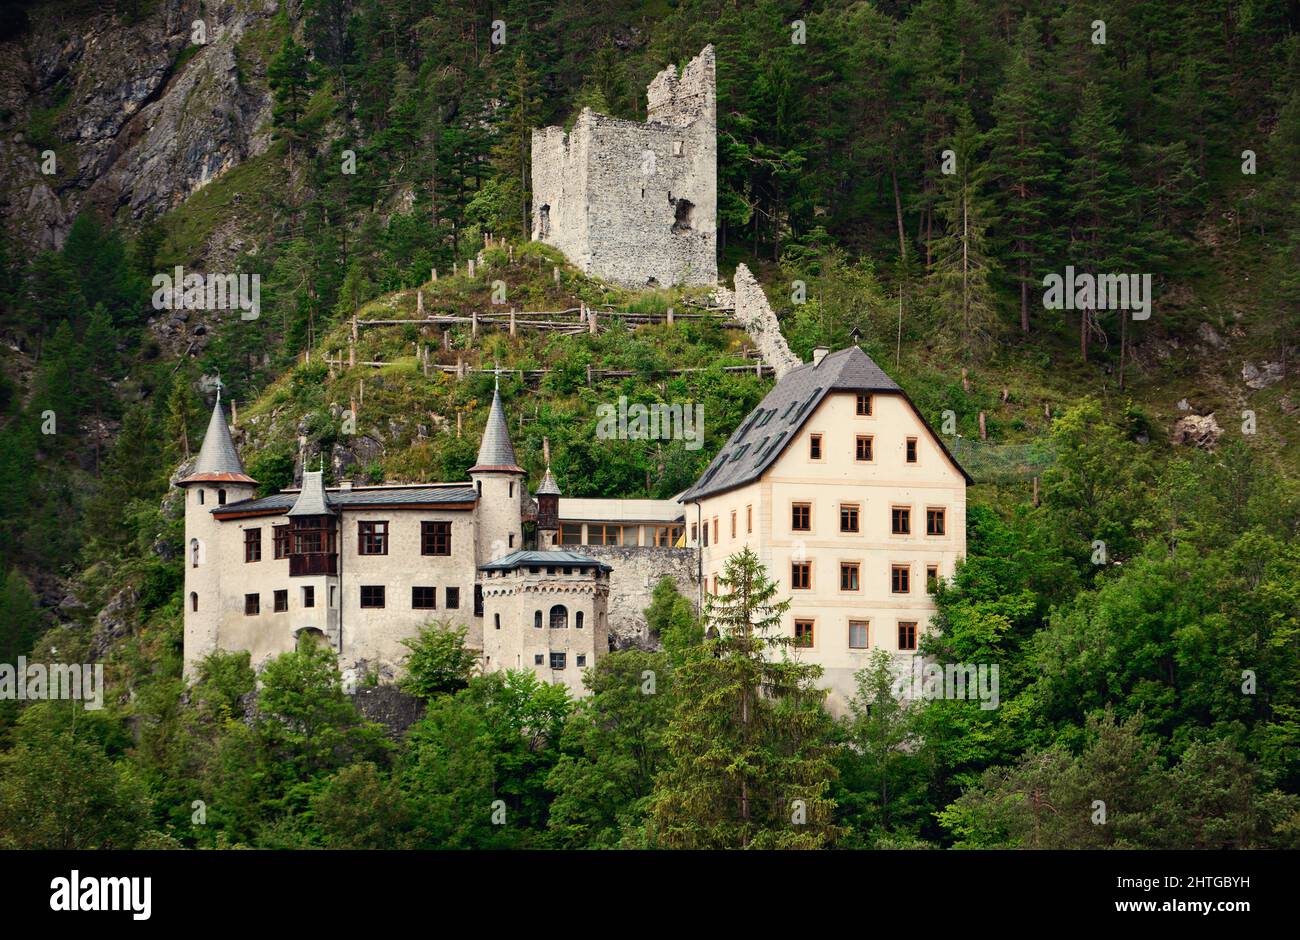 Austria, Nassereith, Schloss Fernsteinsee with old castle Stock Photo